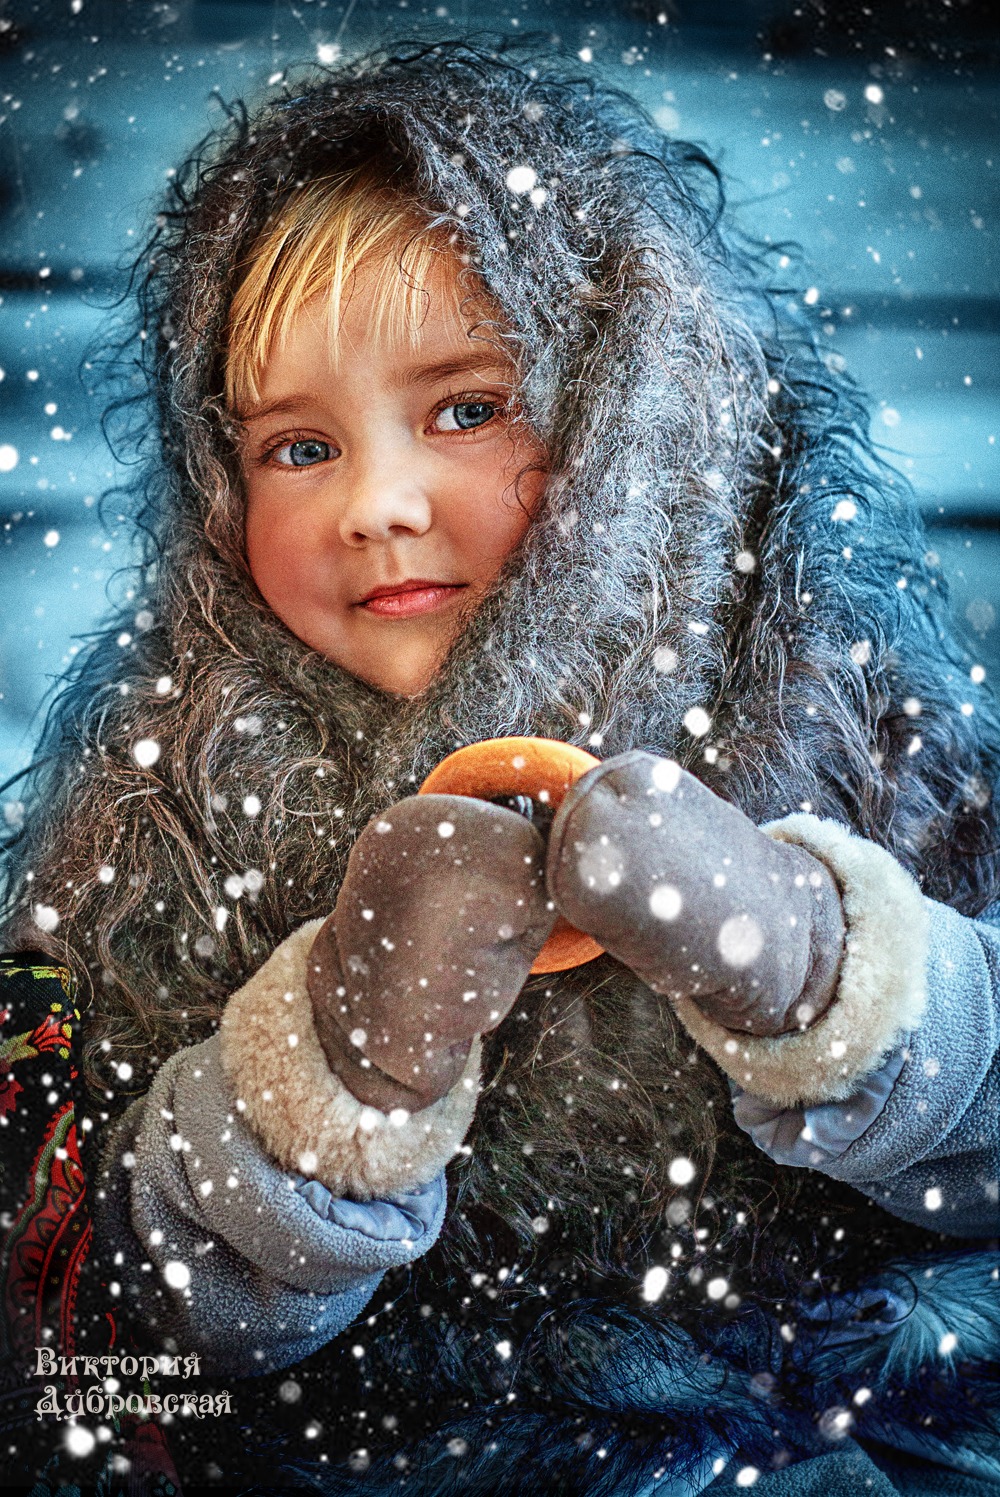 Детский фотограф Виктория Дубровская , Минск, фотография от 21.03.2015